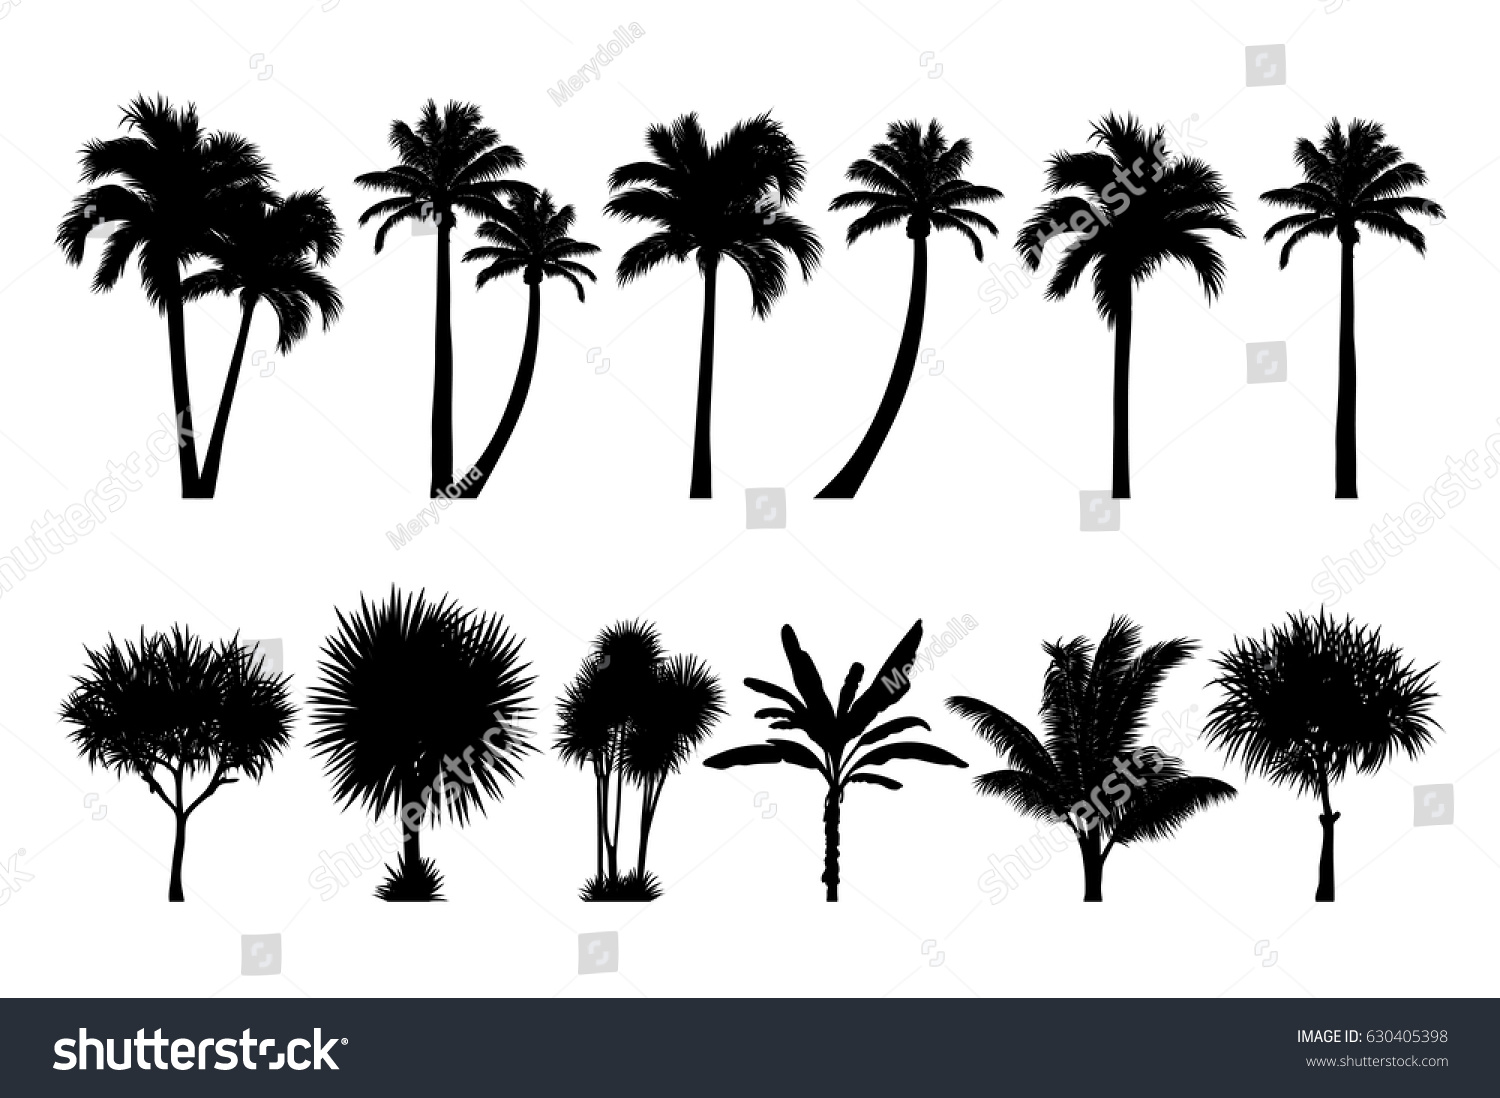 熱帯のヤシと木のシルエットのベクター画像セット Eps のベクター画像素材 ロイヤリティフリー